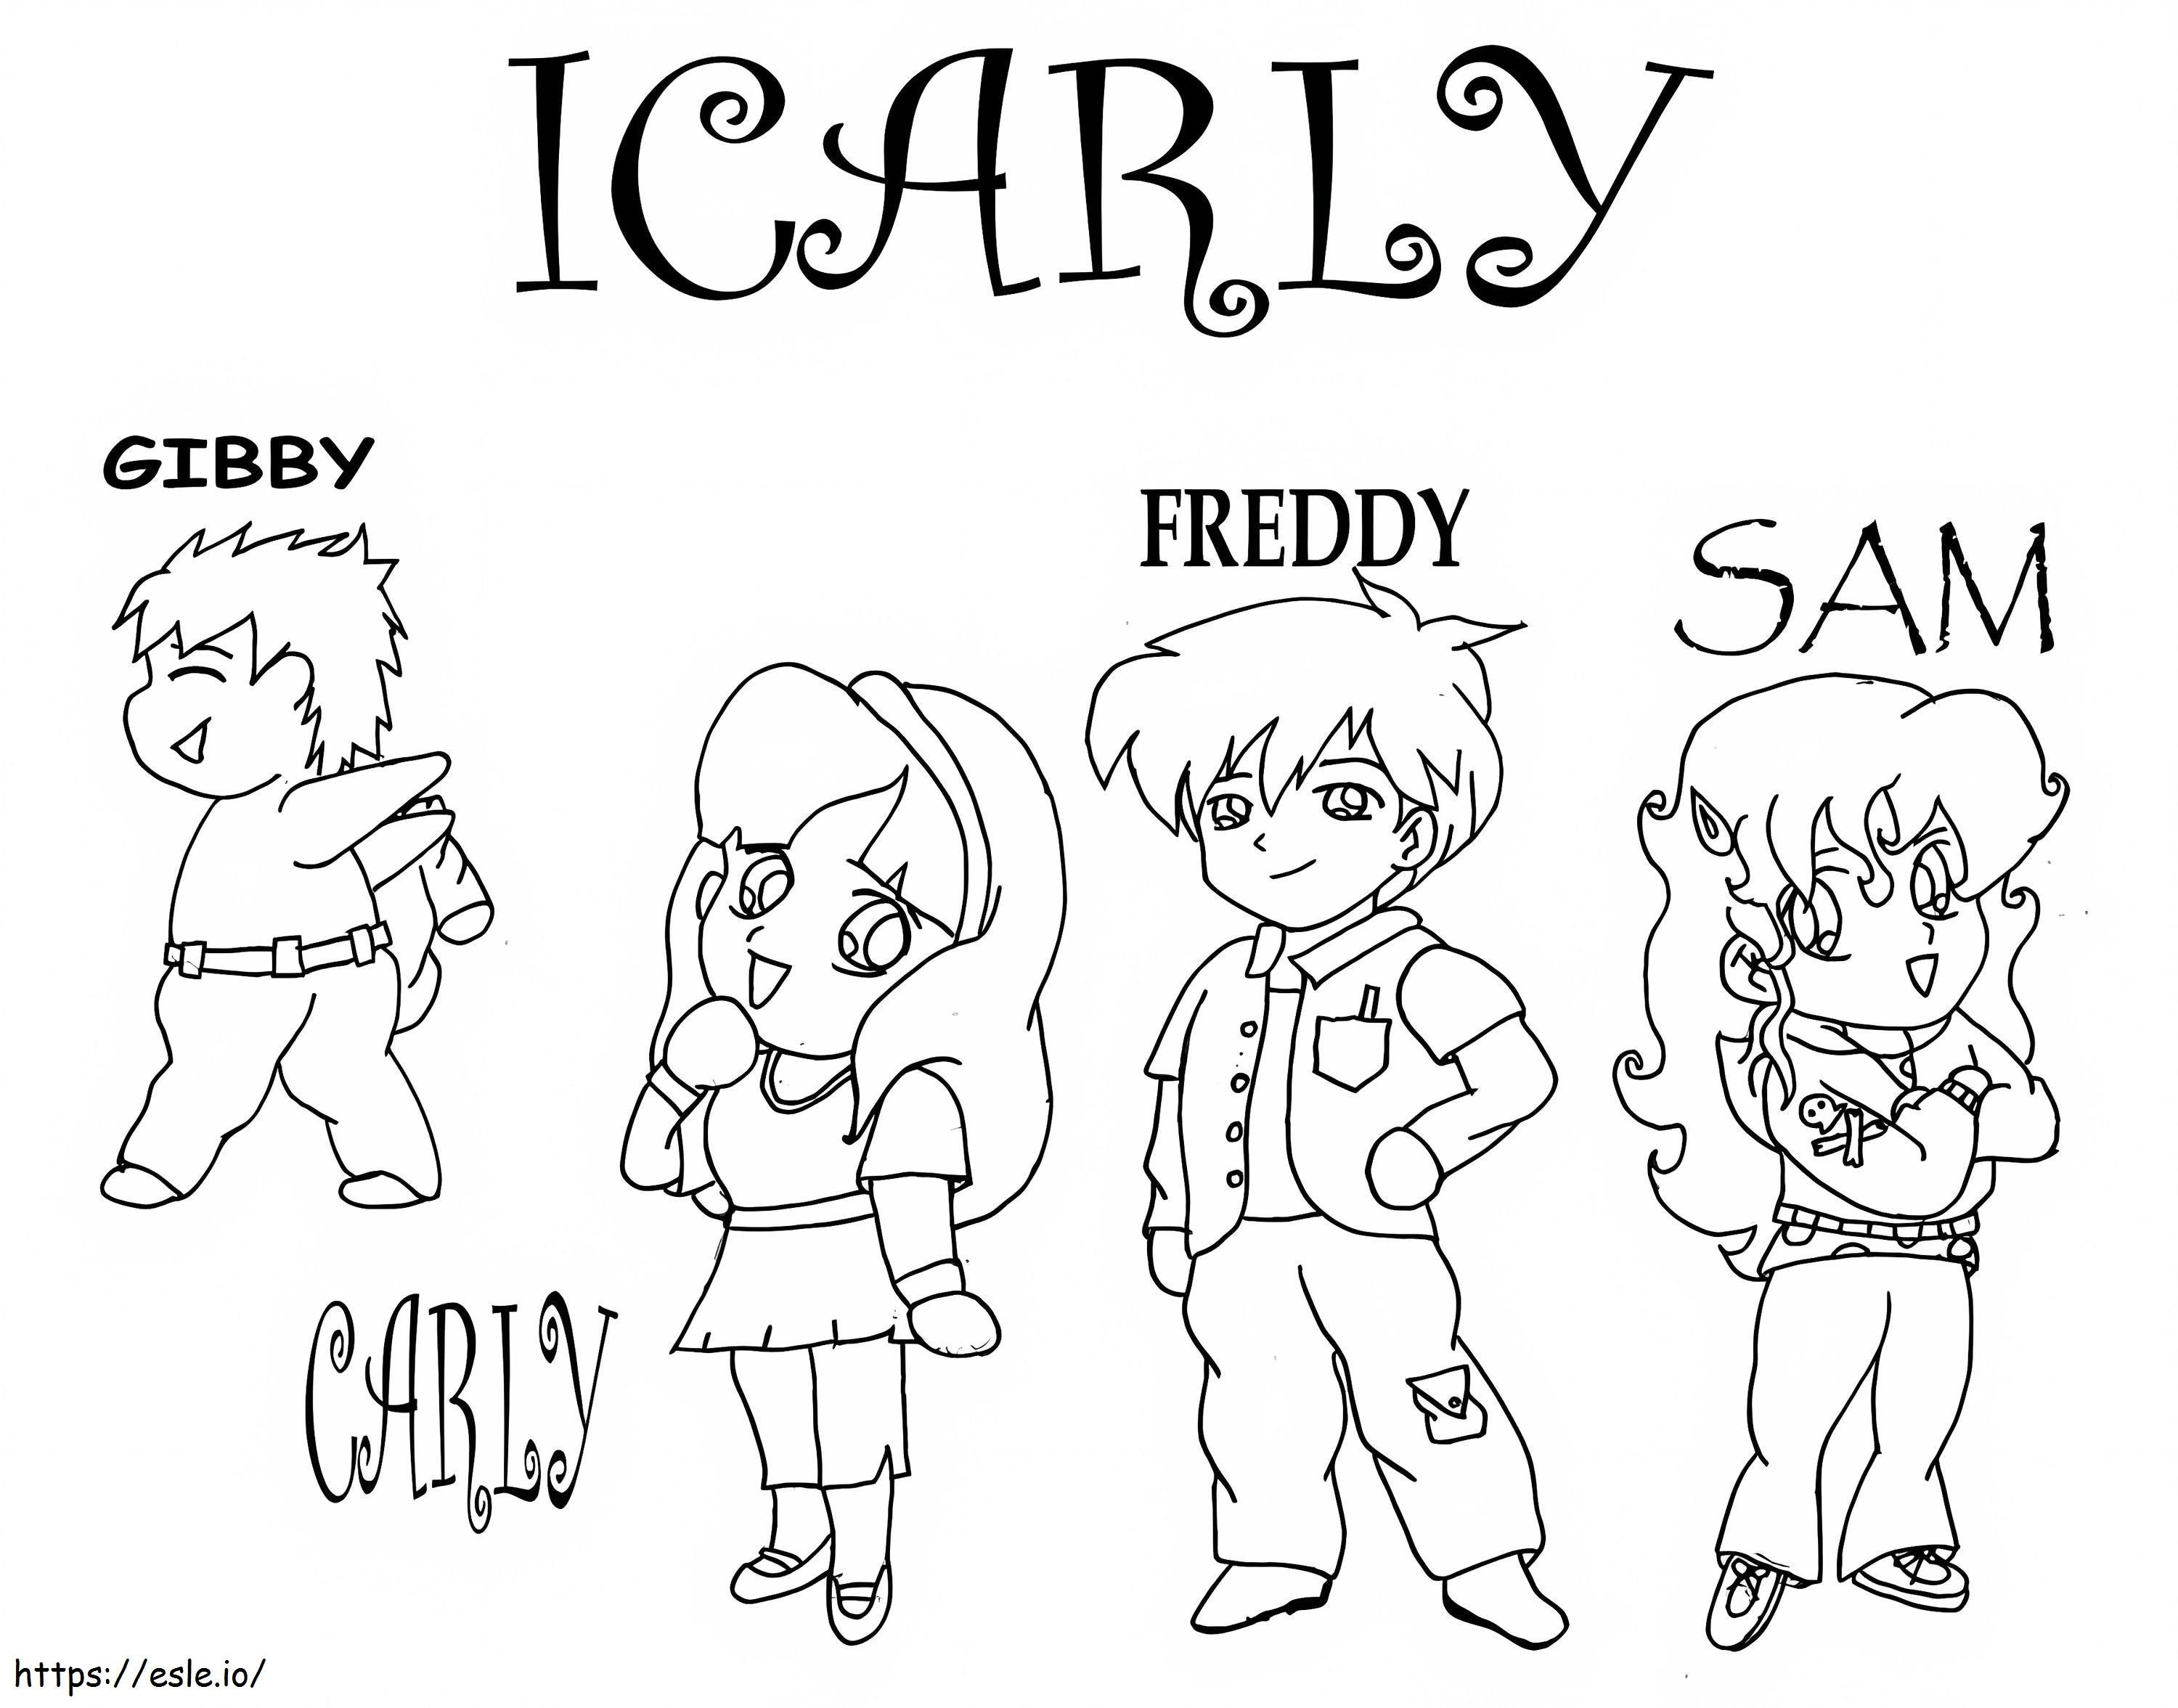 Personagens de ICarly para colorir